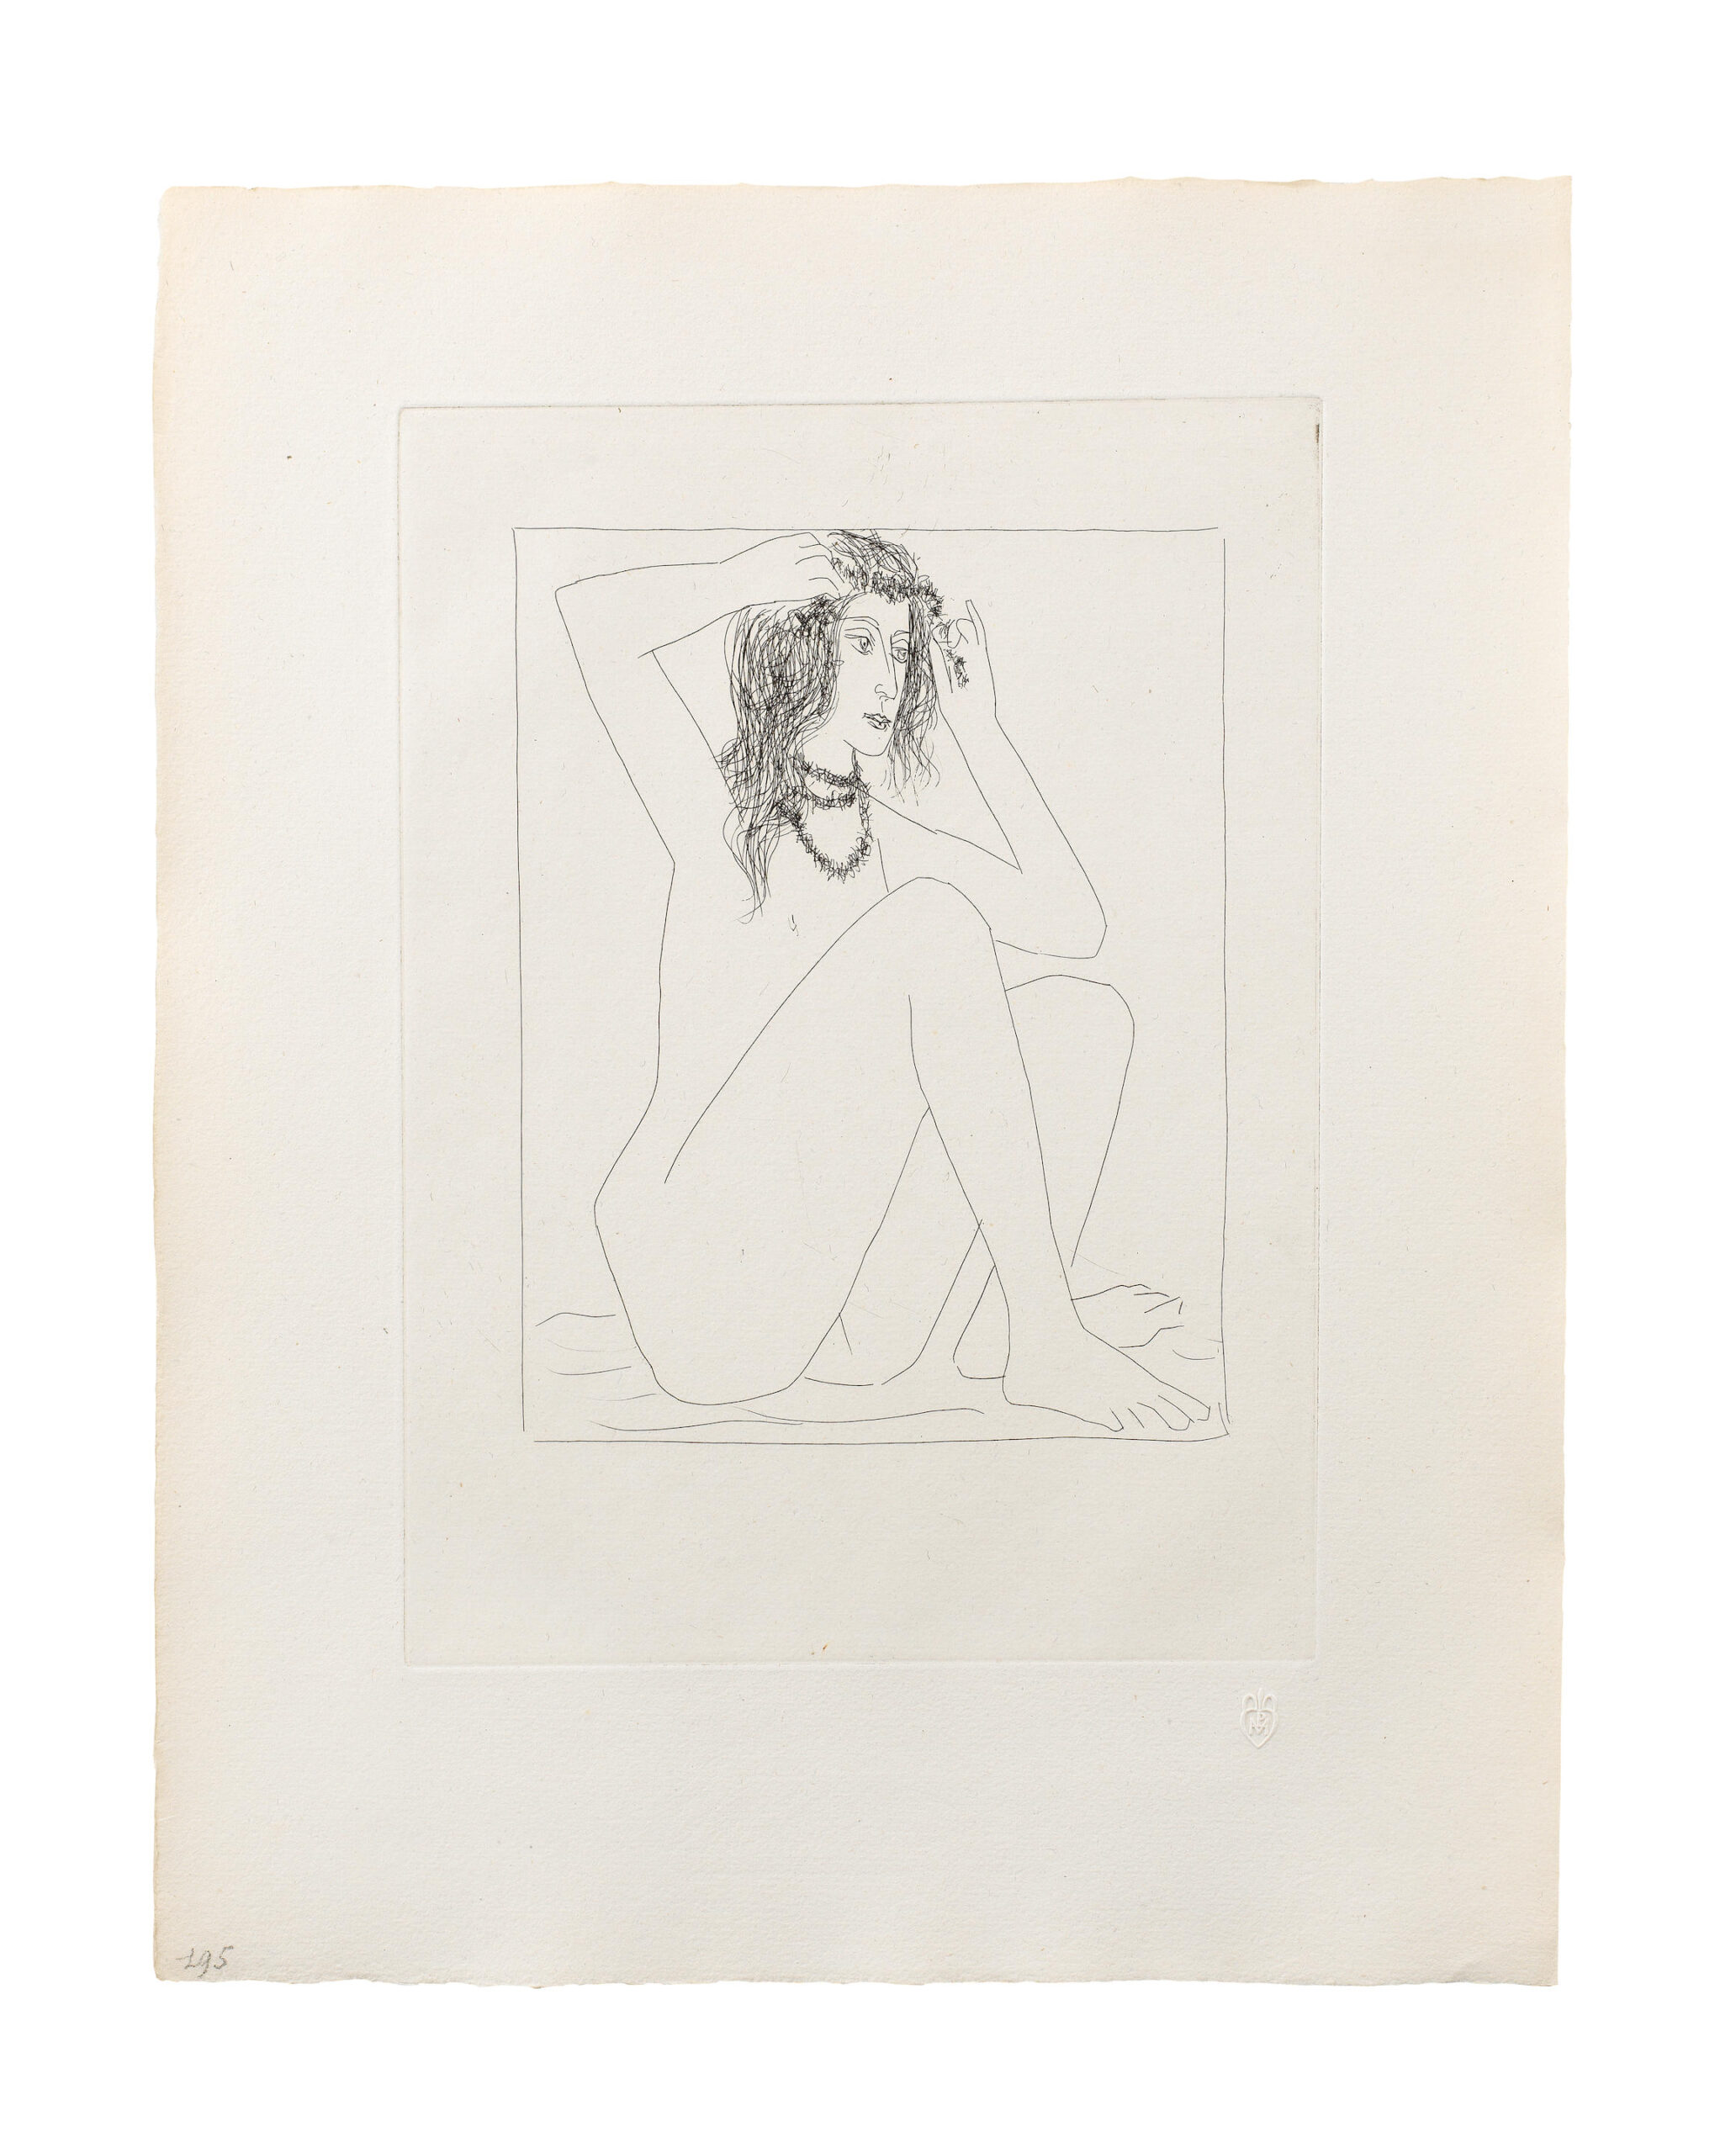 Pablo Picasso, Femme nue se couronnant de fleurs, 1930, Kaltnadelradierung, 31,2 x 22,2 cm, aus der Suite Vollard
